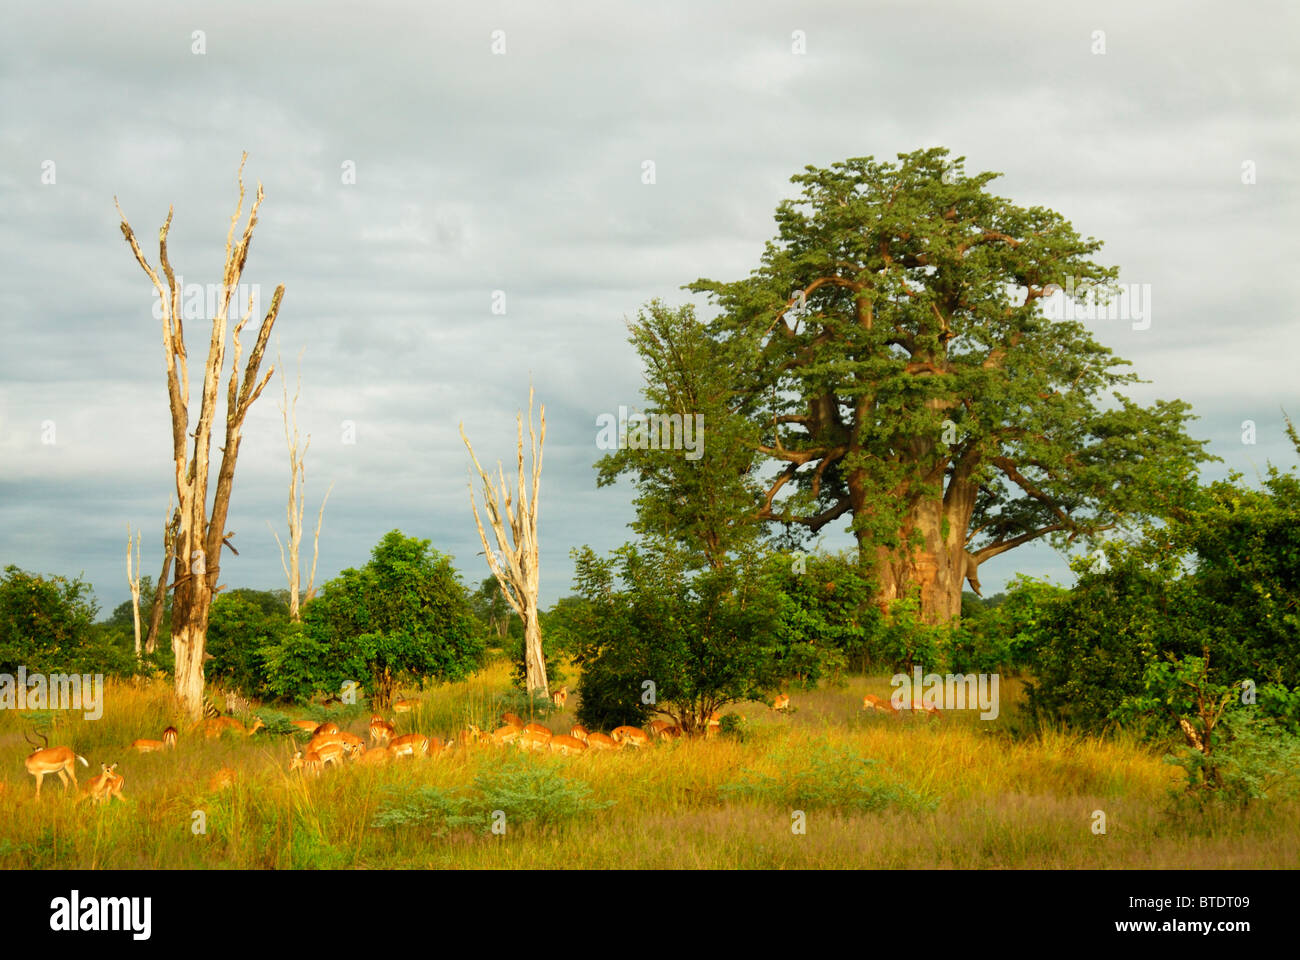 Vista panorámica del gran árbol baobab (Adansonia digitata) y el rebaño de impala Foto de stock